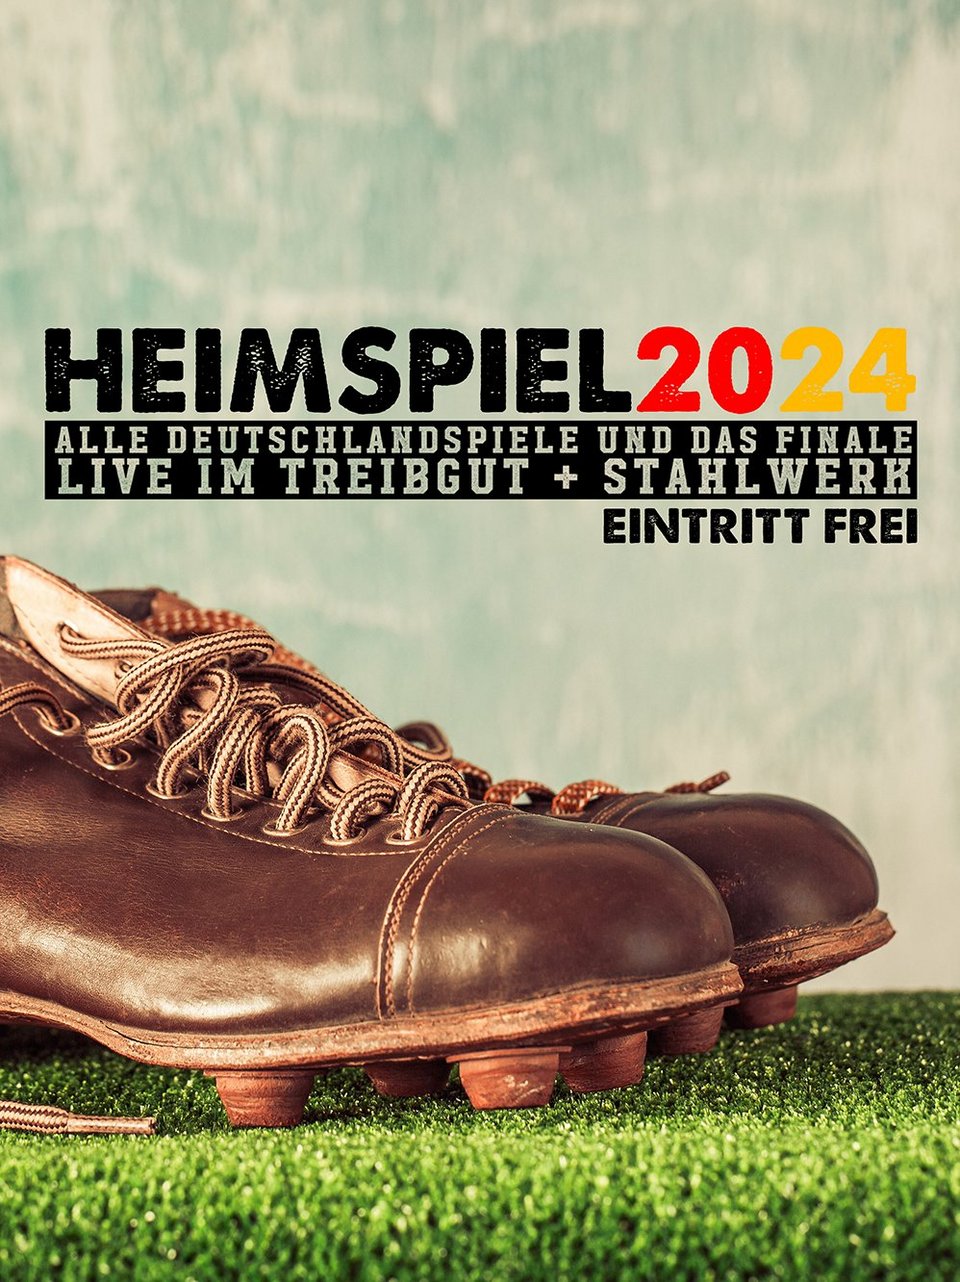 HEIMSPIEL 2024 - Die Fussball EM im Treibgut 